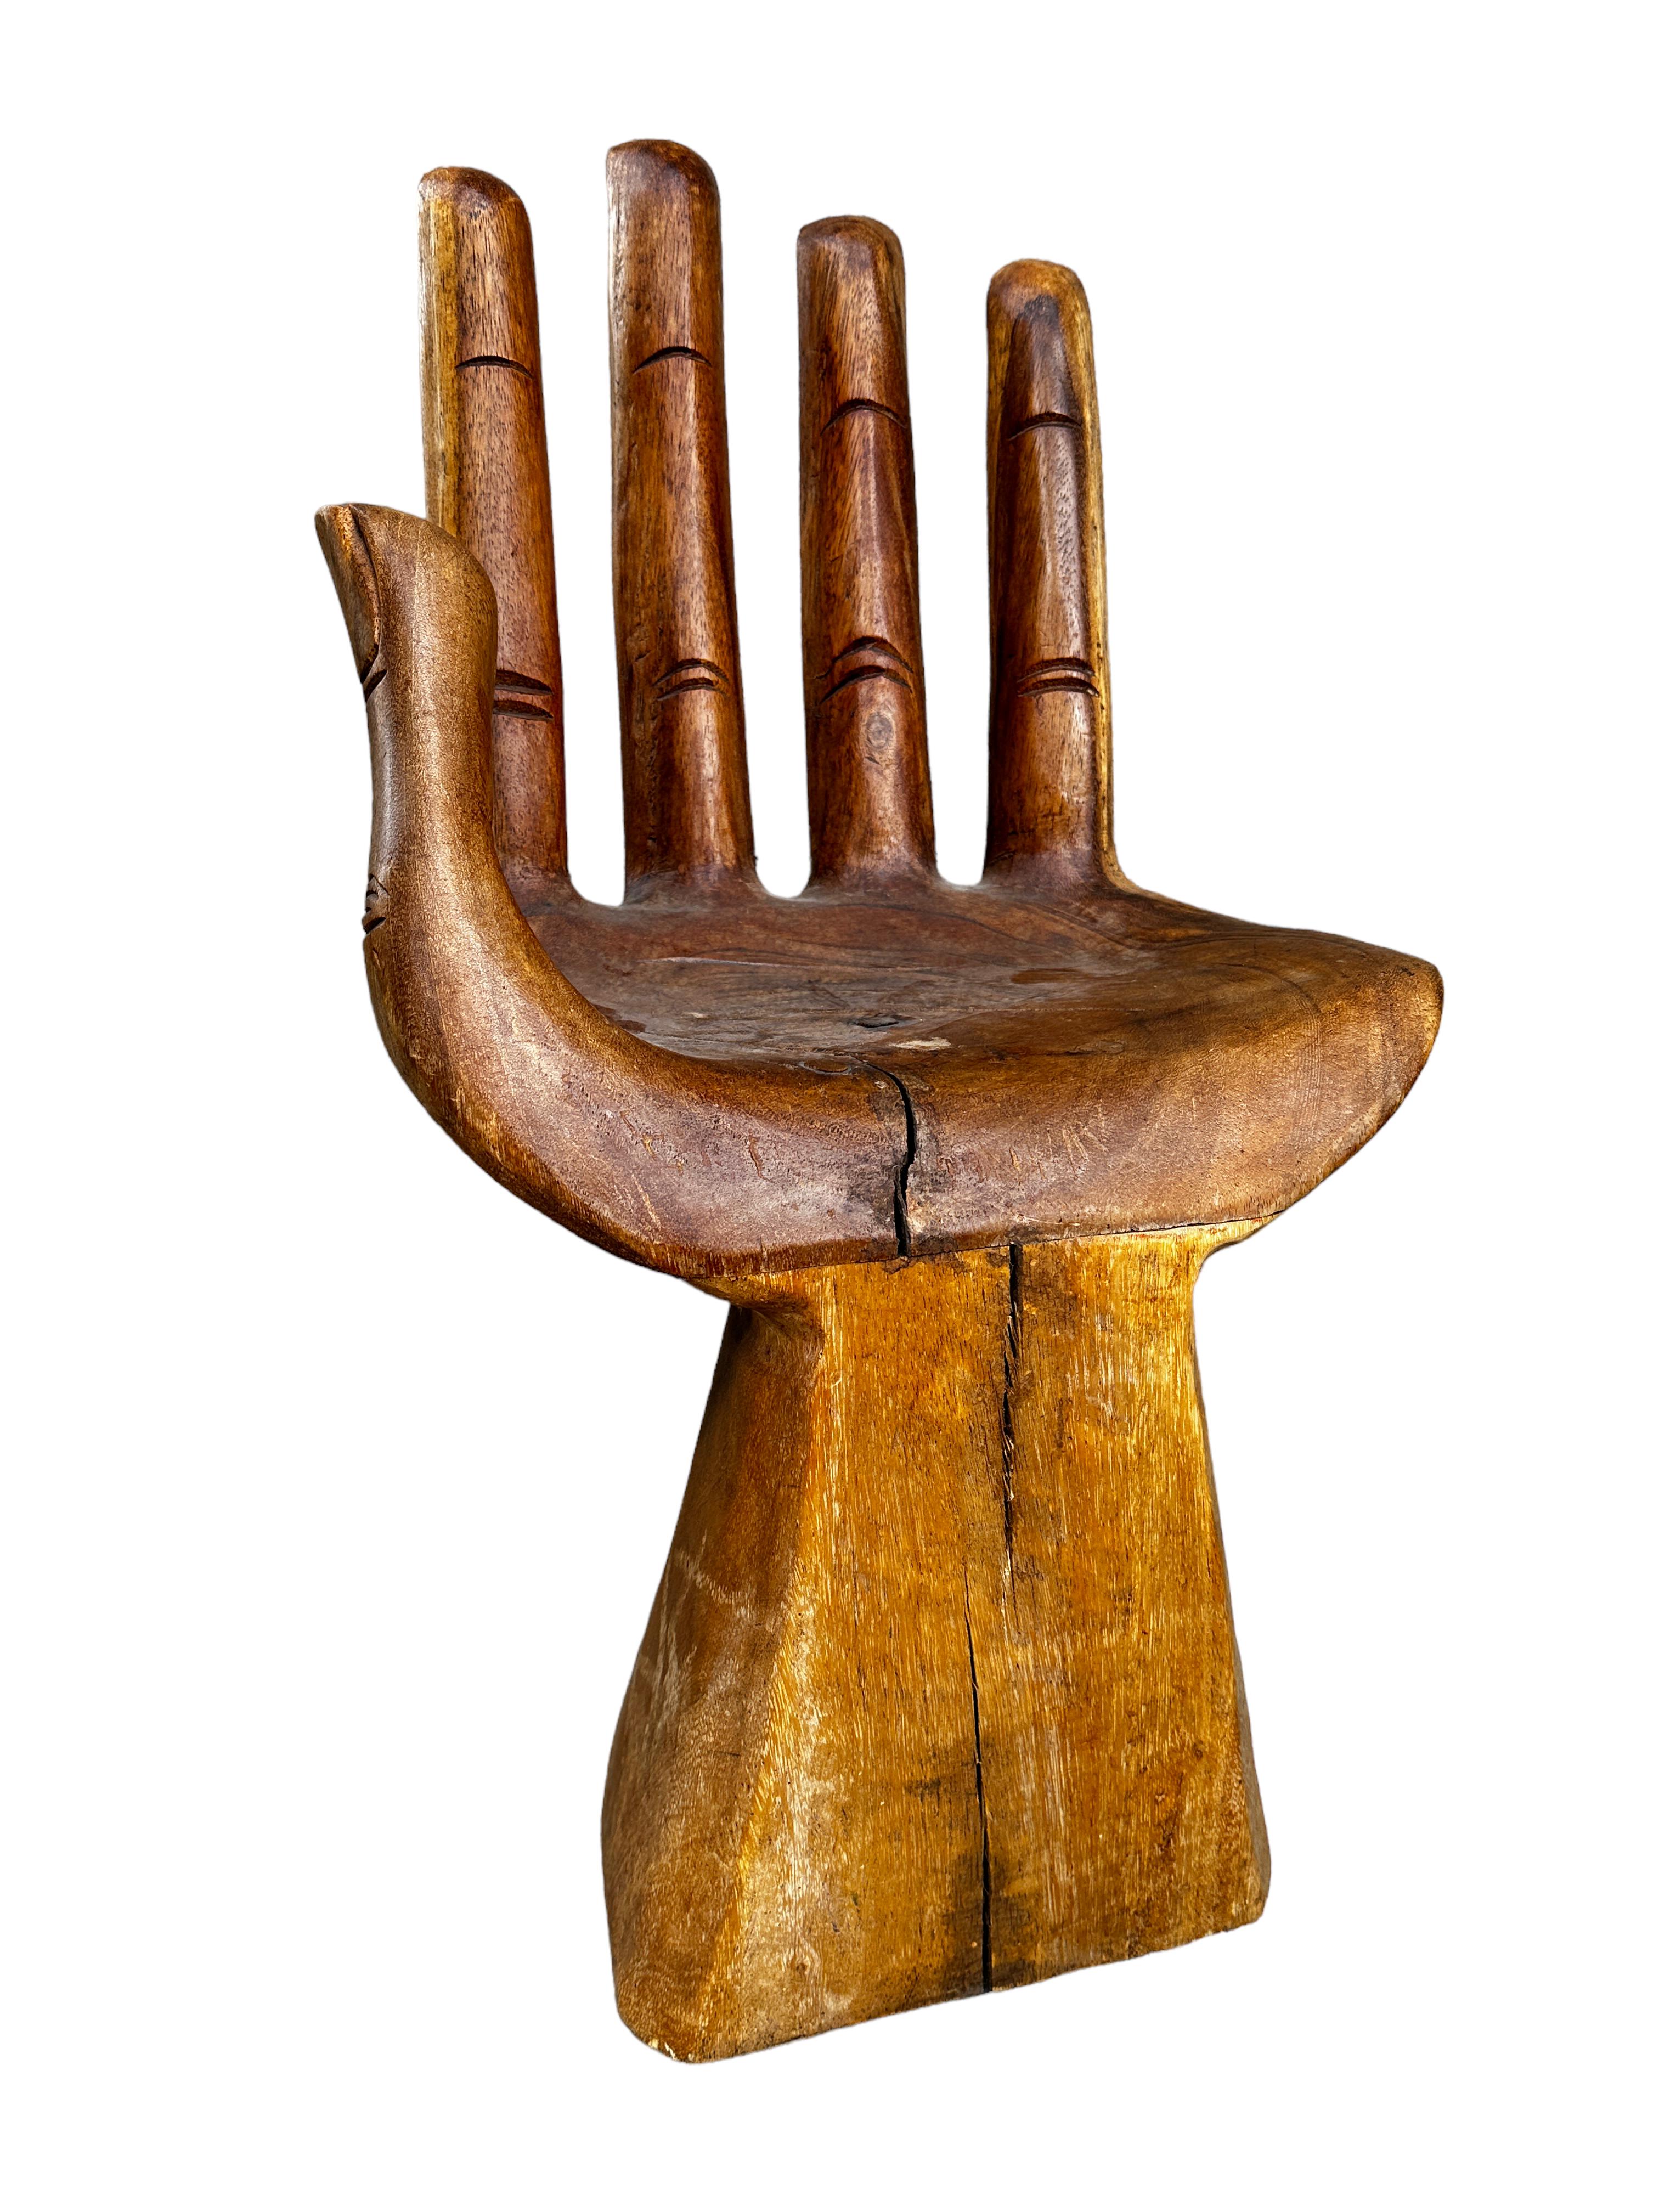 Une étonnante chaise à main sculptée de studio, circa 1970, dans le style de Pedro Friedeberg, qui apporte à la fois un élément méditatif et une sculpture fonctionnelle unique dans votre maison avec la pièce d'accent en bois sculptée artisanale.